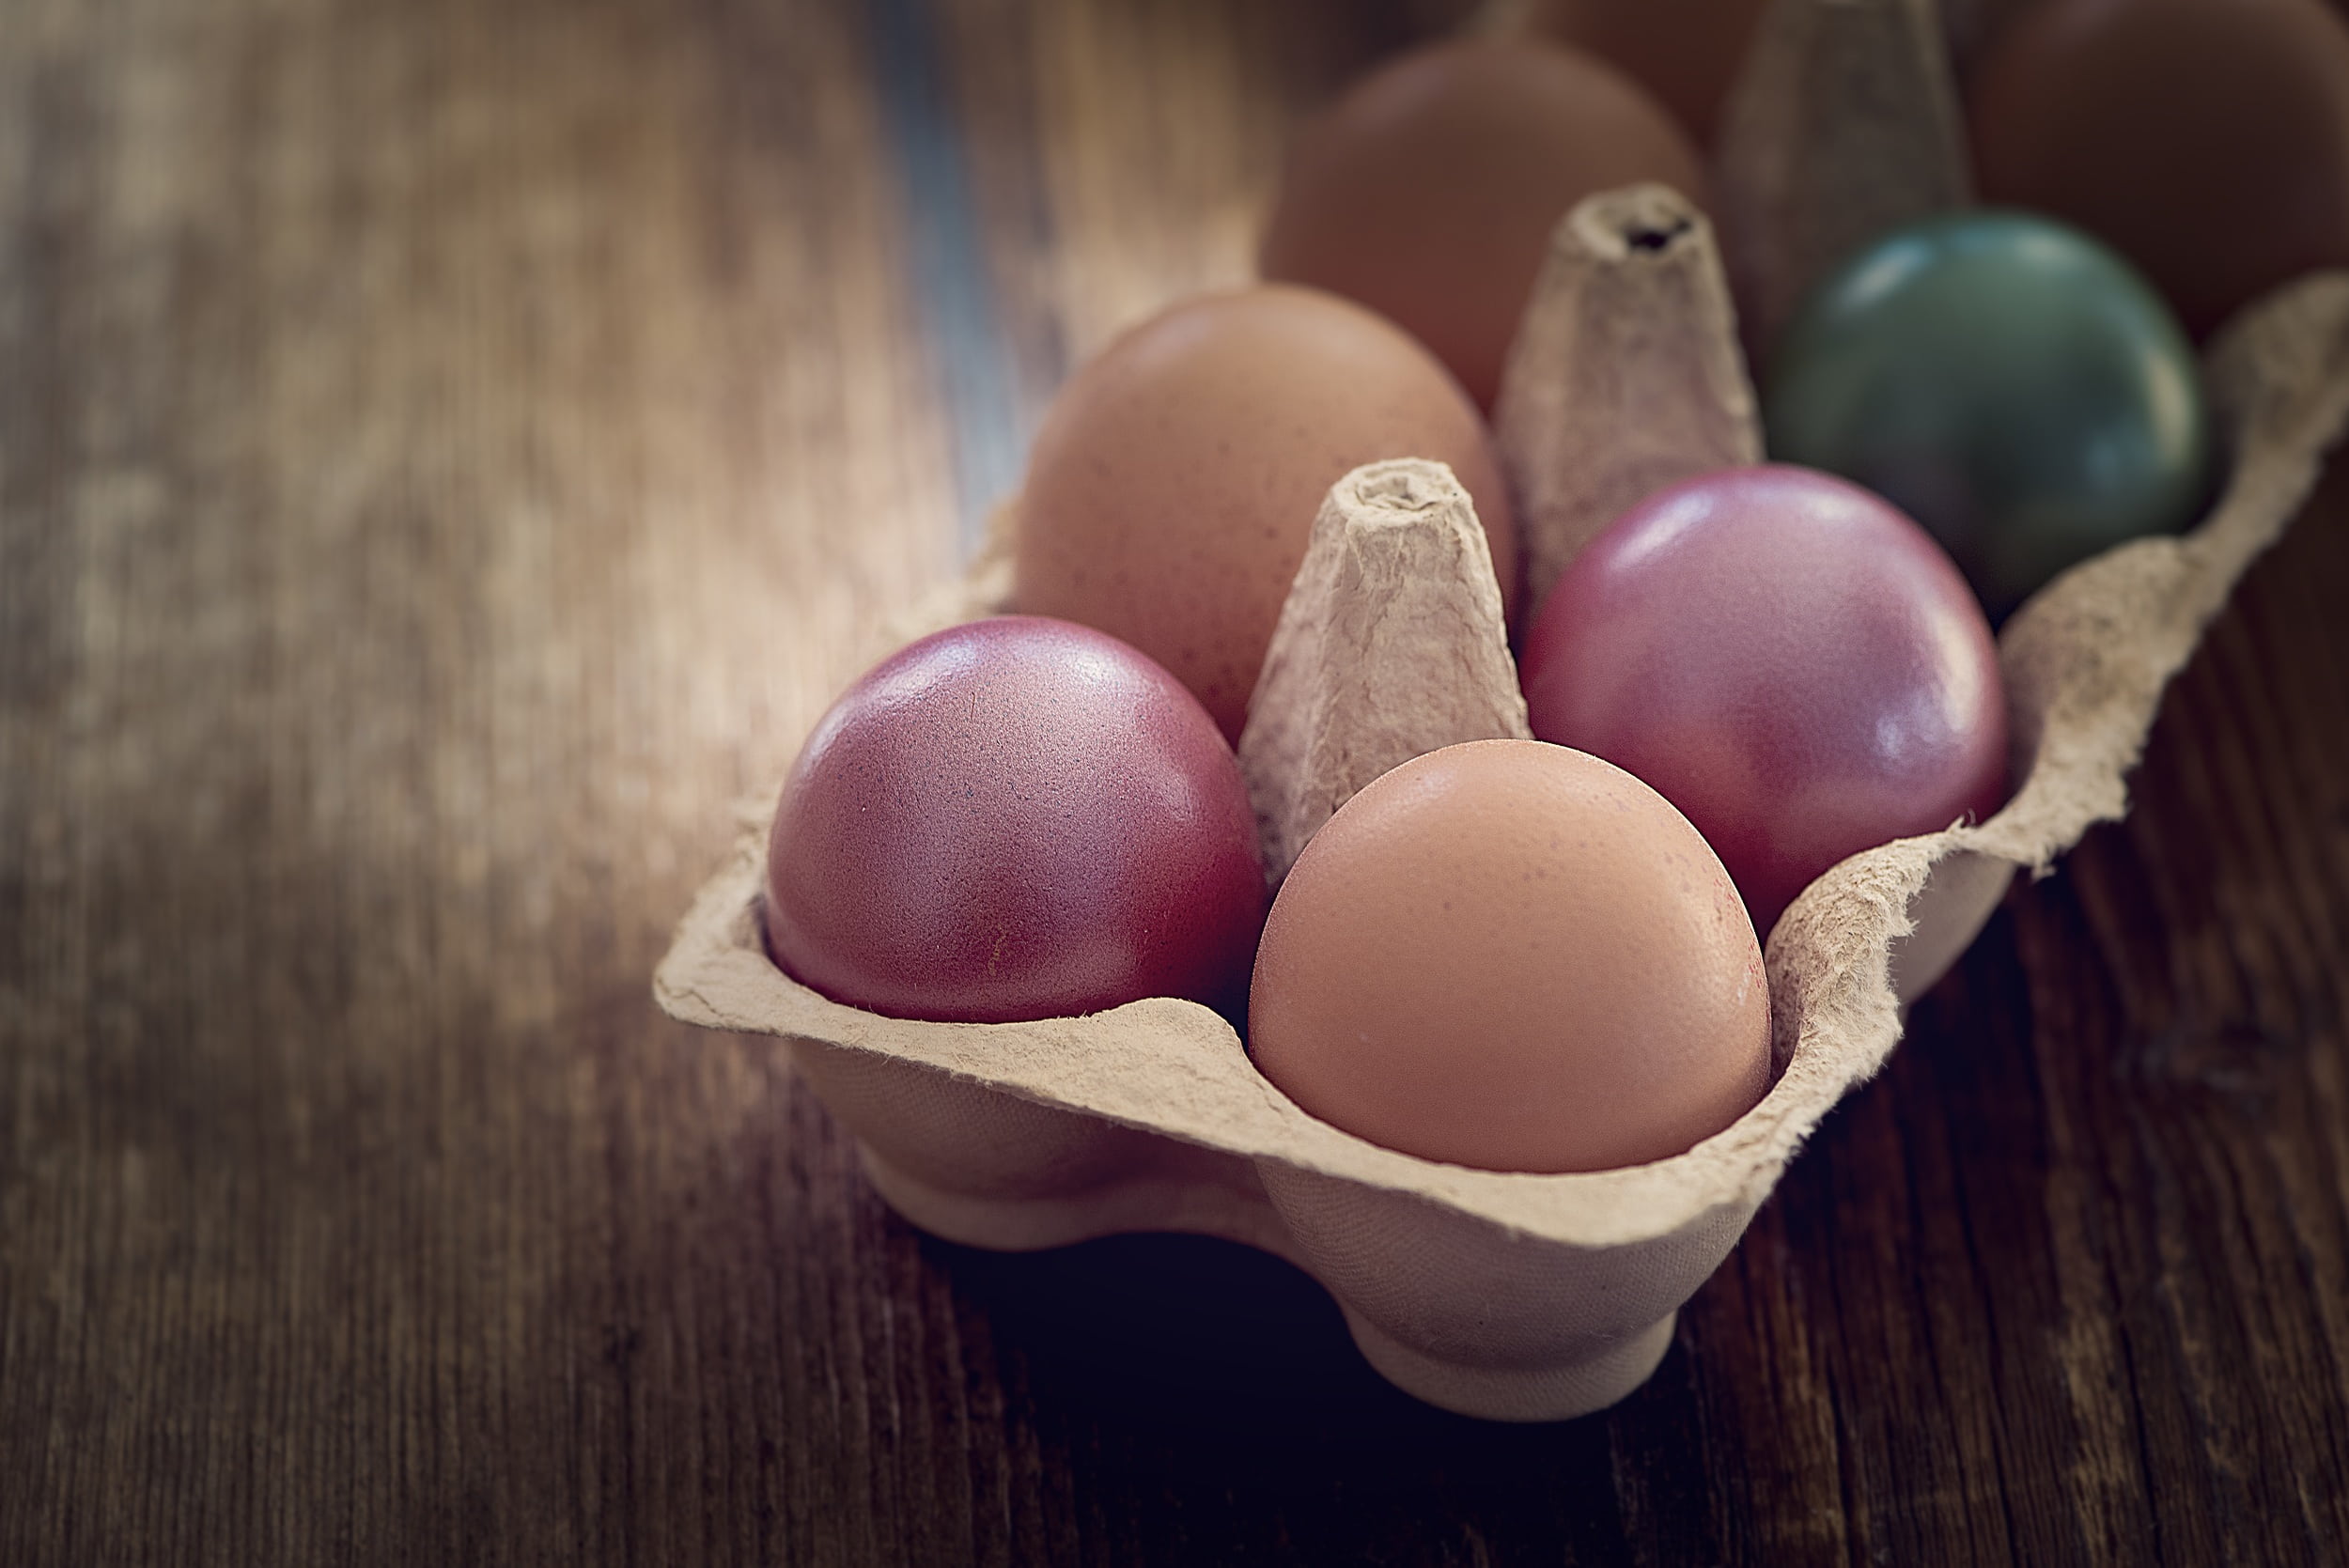 Натурально и без химии: как покрасить яйца на Пасху 2021 с помощью продуктов